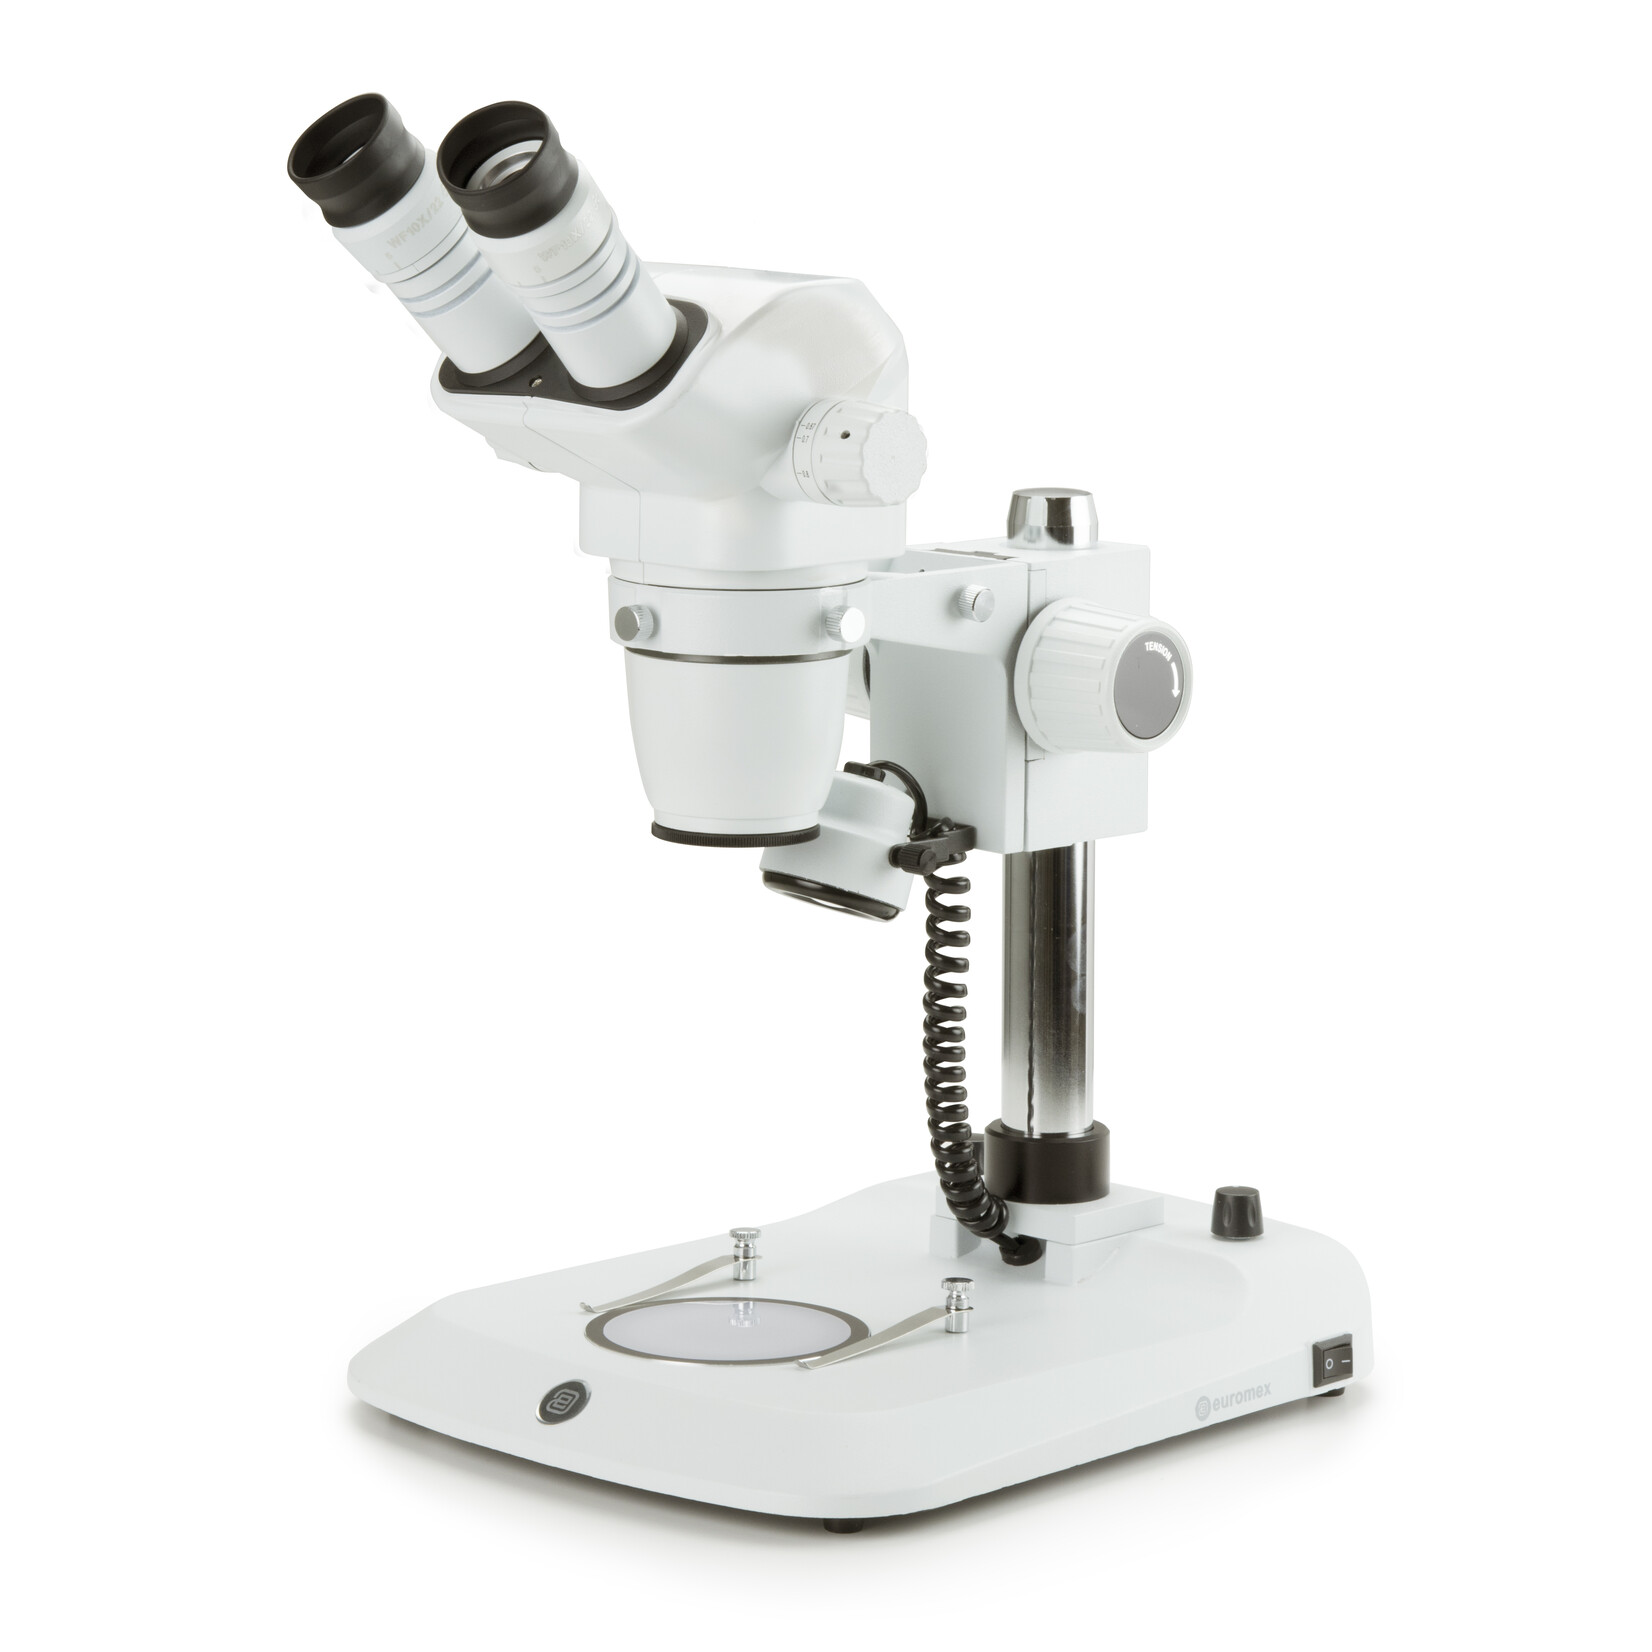 Microscópio estéreo binocular com zoom NexiusZoom, objetiva com zoom de 0,67x a 4,5x, ampliação de 6,7x a 45x com suporte de coluna